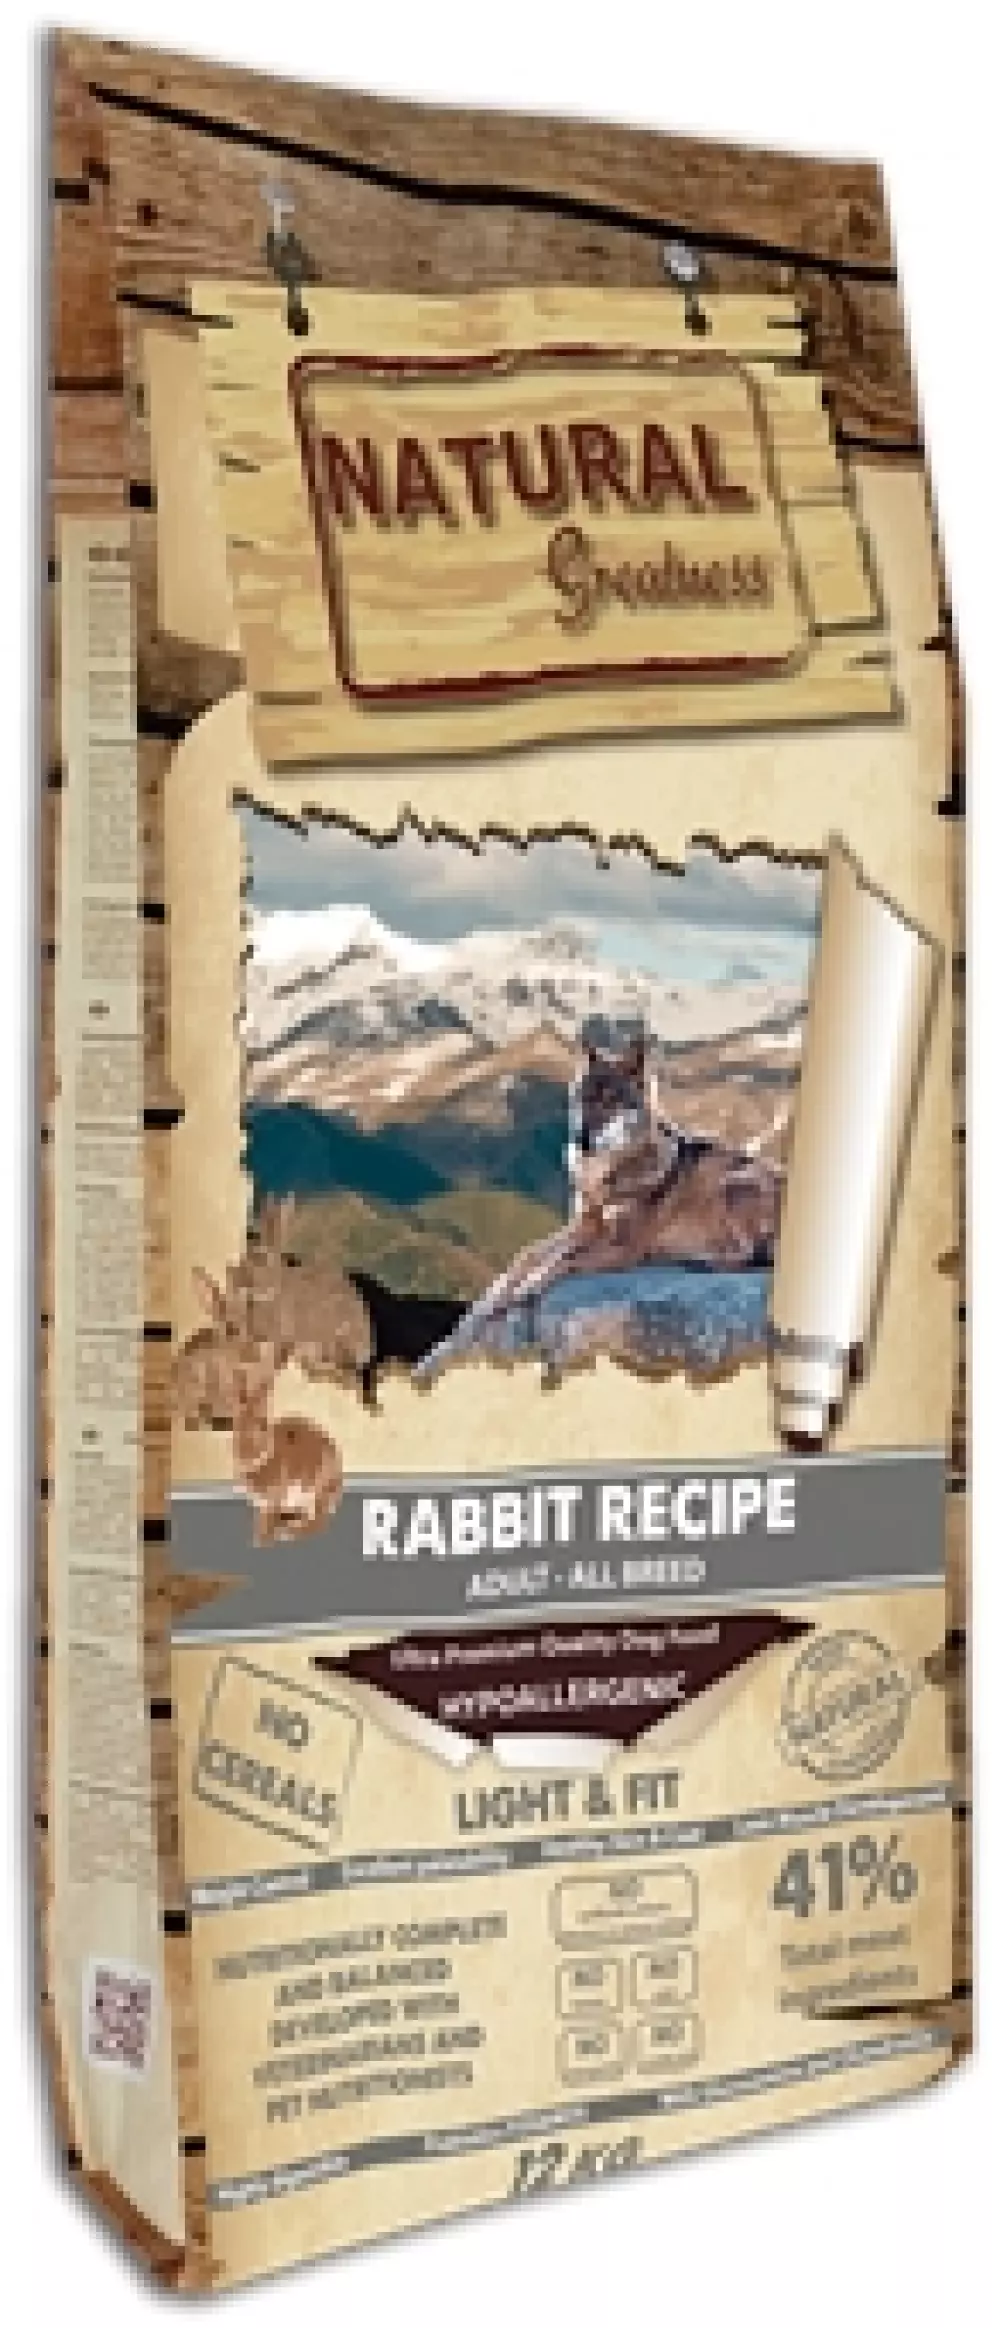 Natural Greatness Rabbit Recipe – Light & Fit, 2 kg, 8414606901234, Hundemat, Natural Greatness, Arctic Pets AS, Rabbit Recipe – Light & Fit, Tørrfor, Voksen